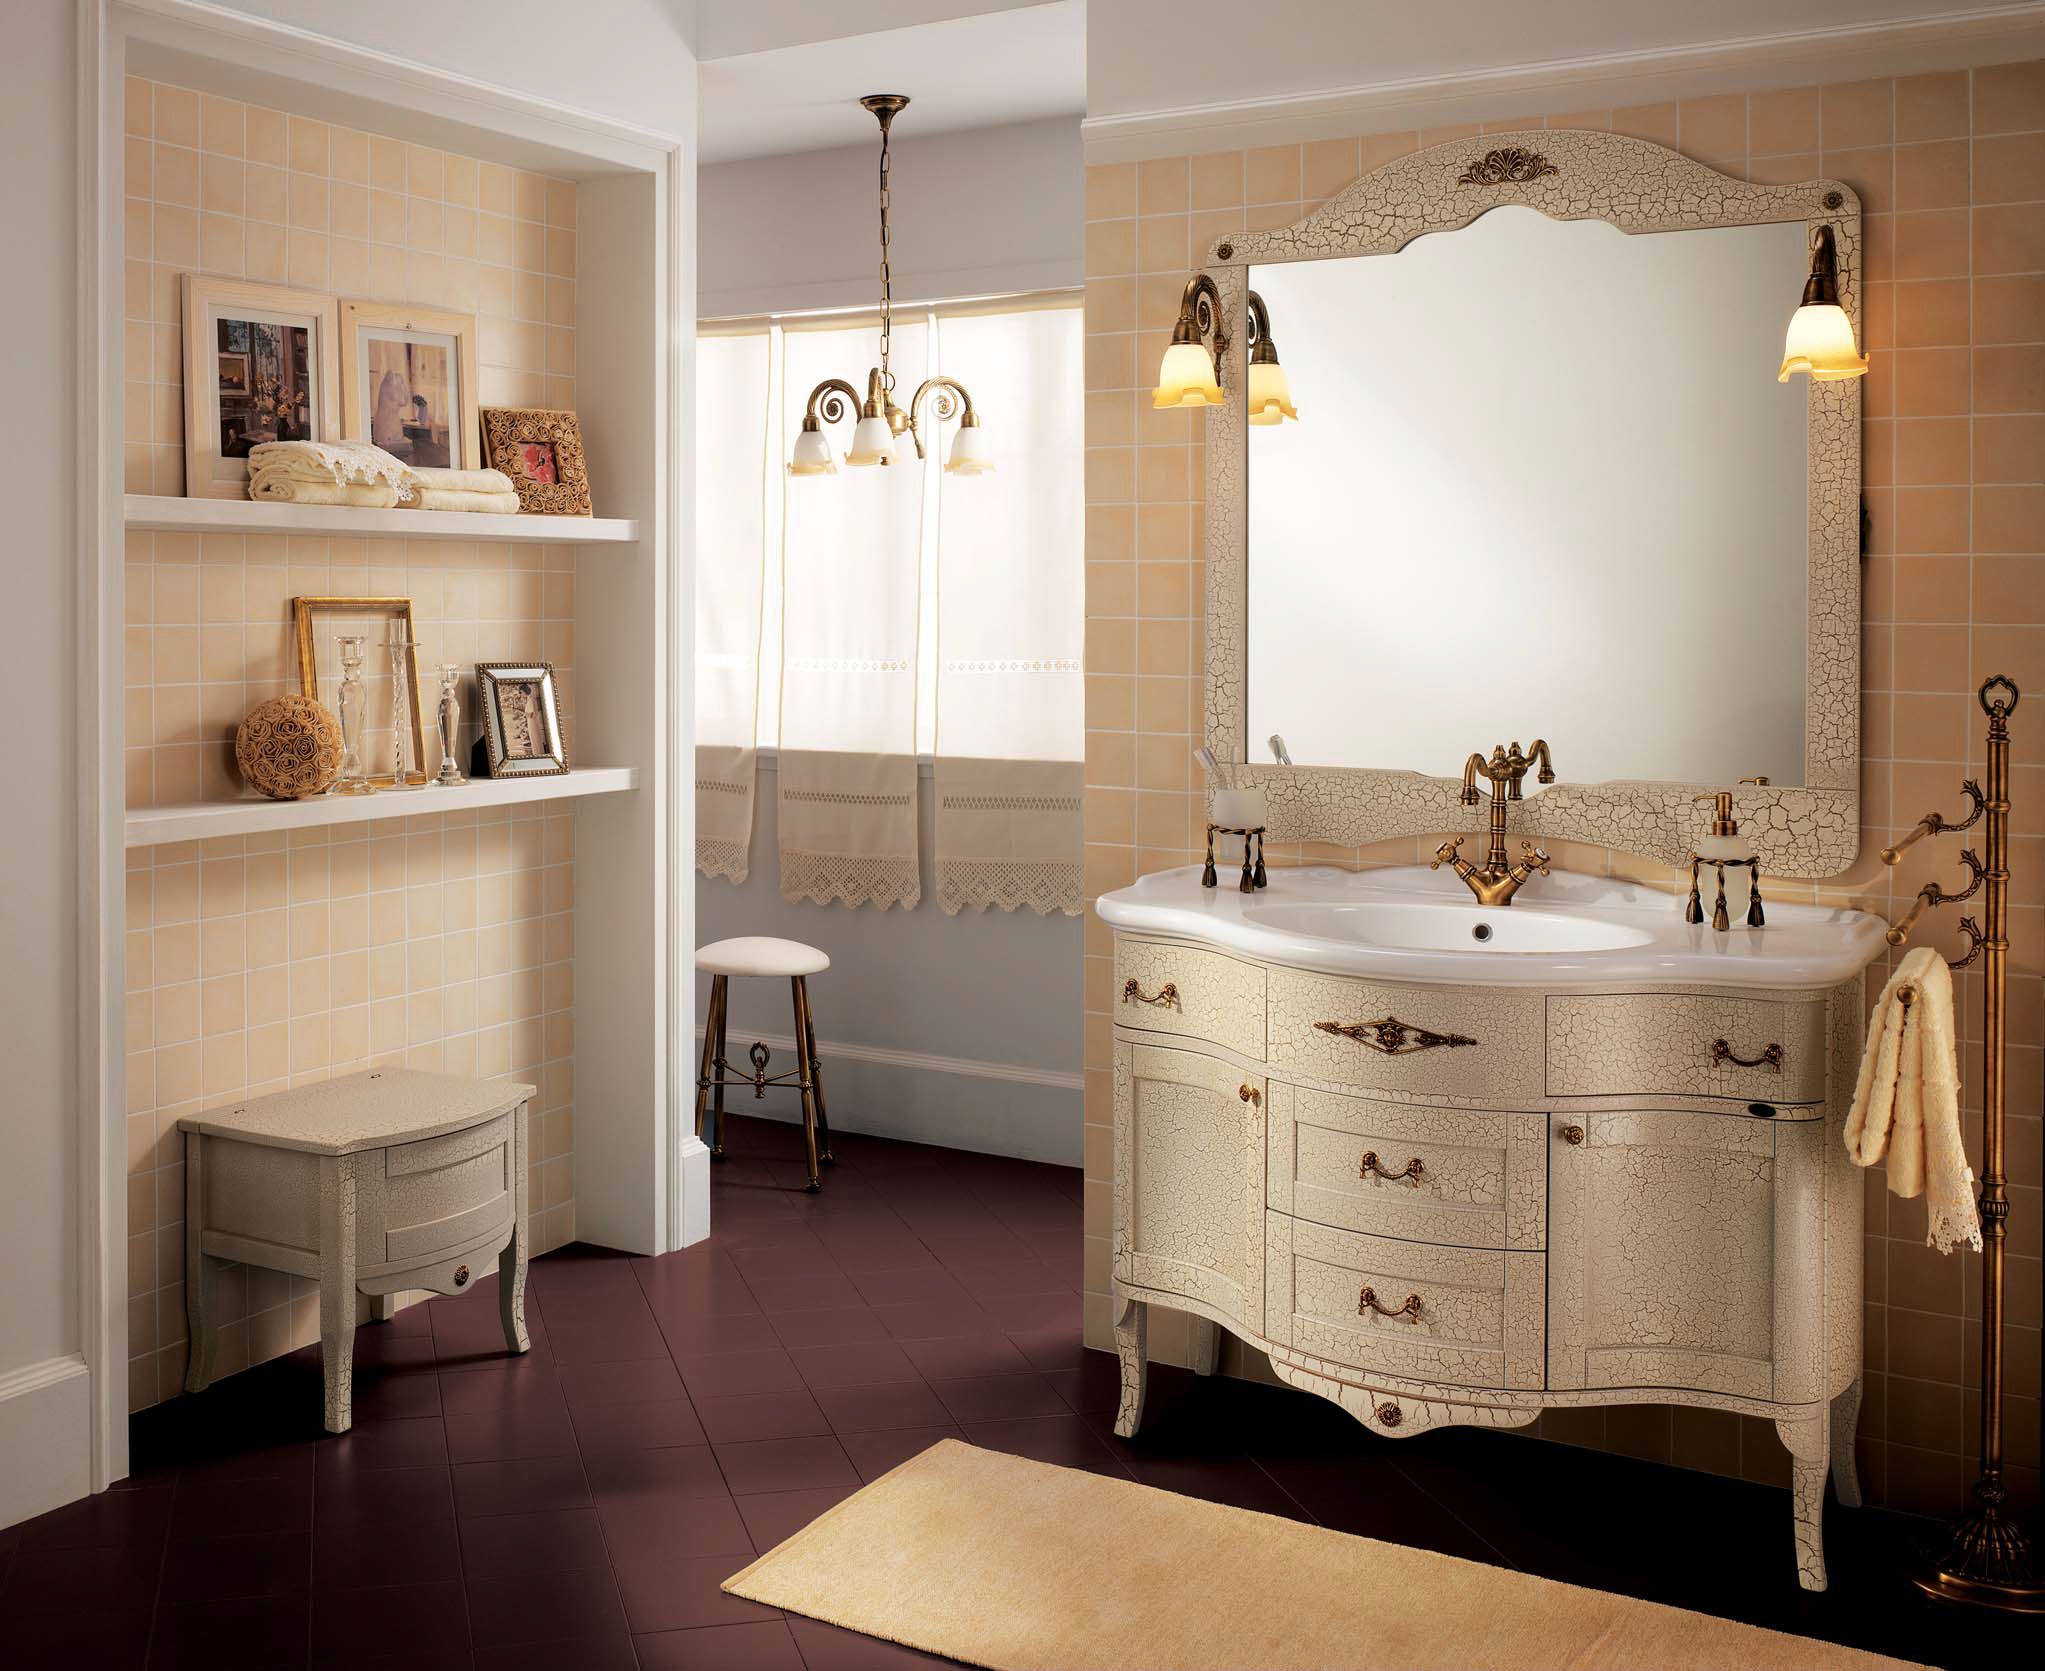 Мебель для ванны классика. Bagno piu мебель для ванной. Мебель для ванной классика. Мебель для ванной в классическом стиле. Комплект мебели для ванной в классическом стиле.